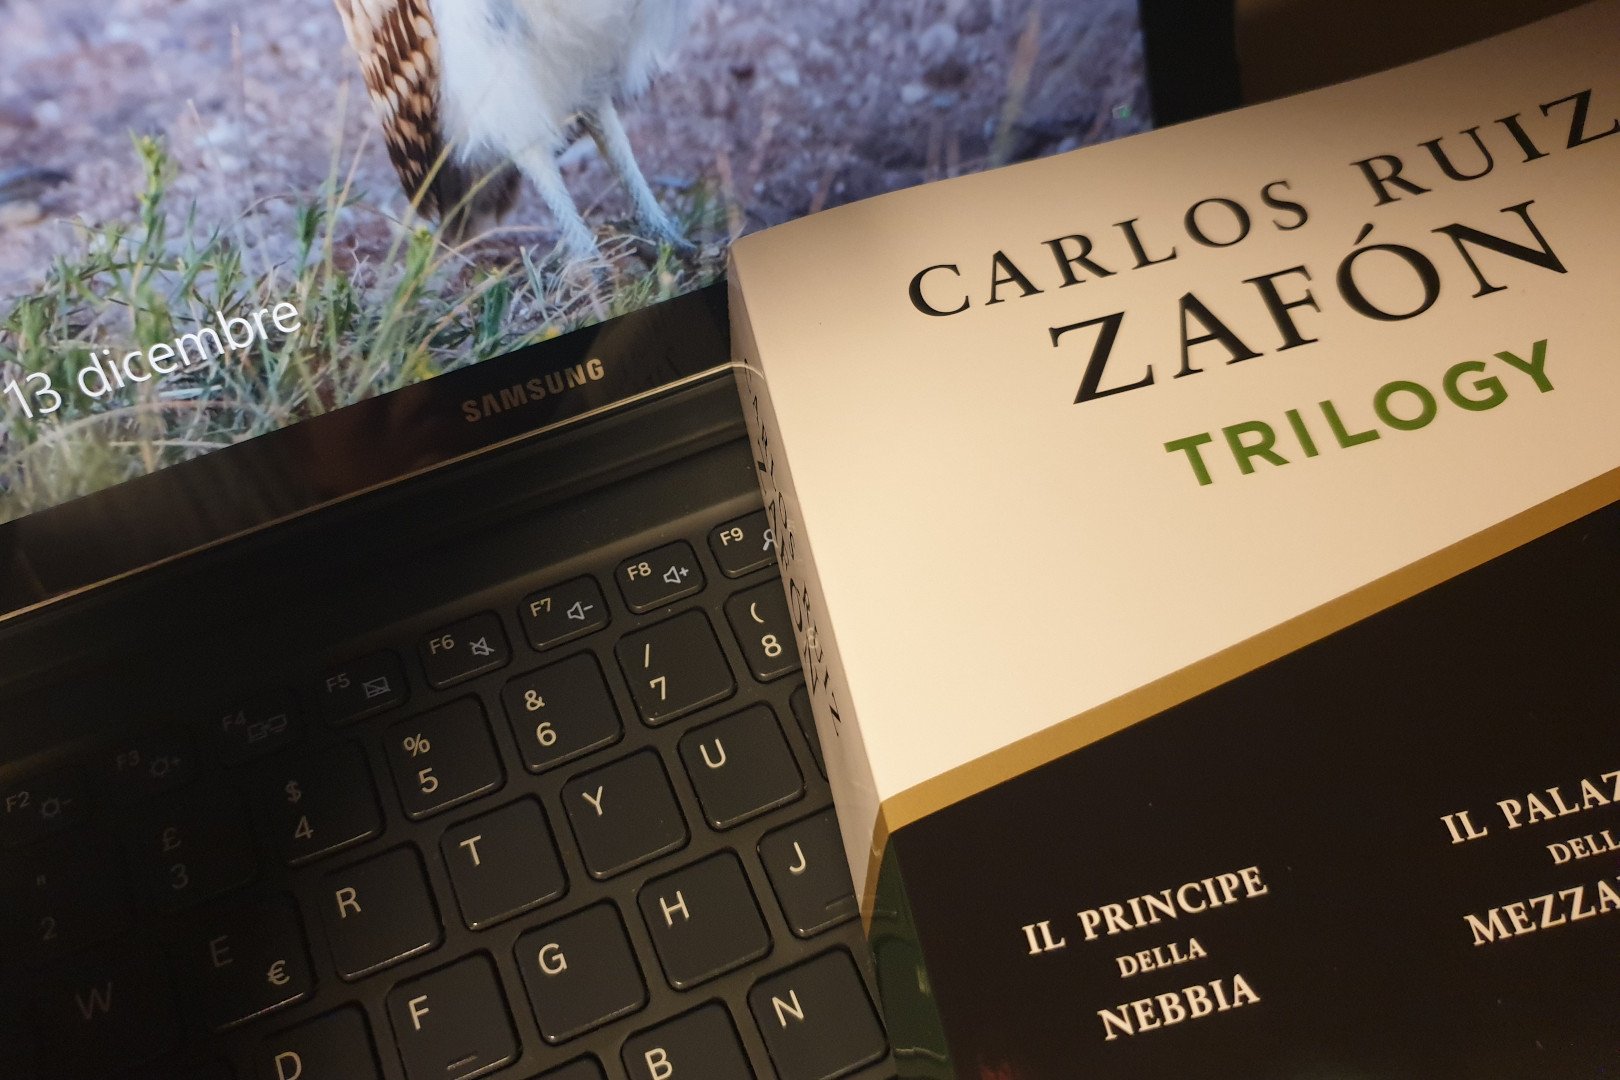 Il volume che raccoglie la trilogia di Carlos Ruiz Zafón